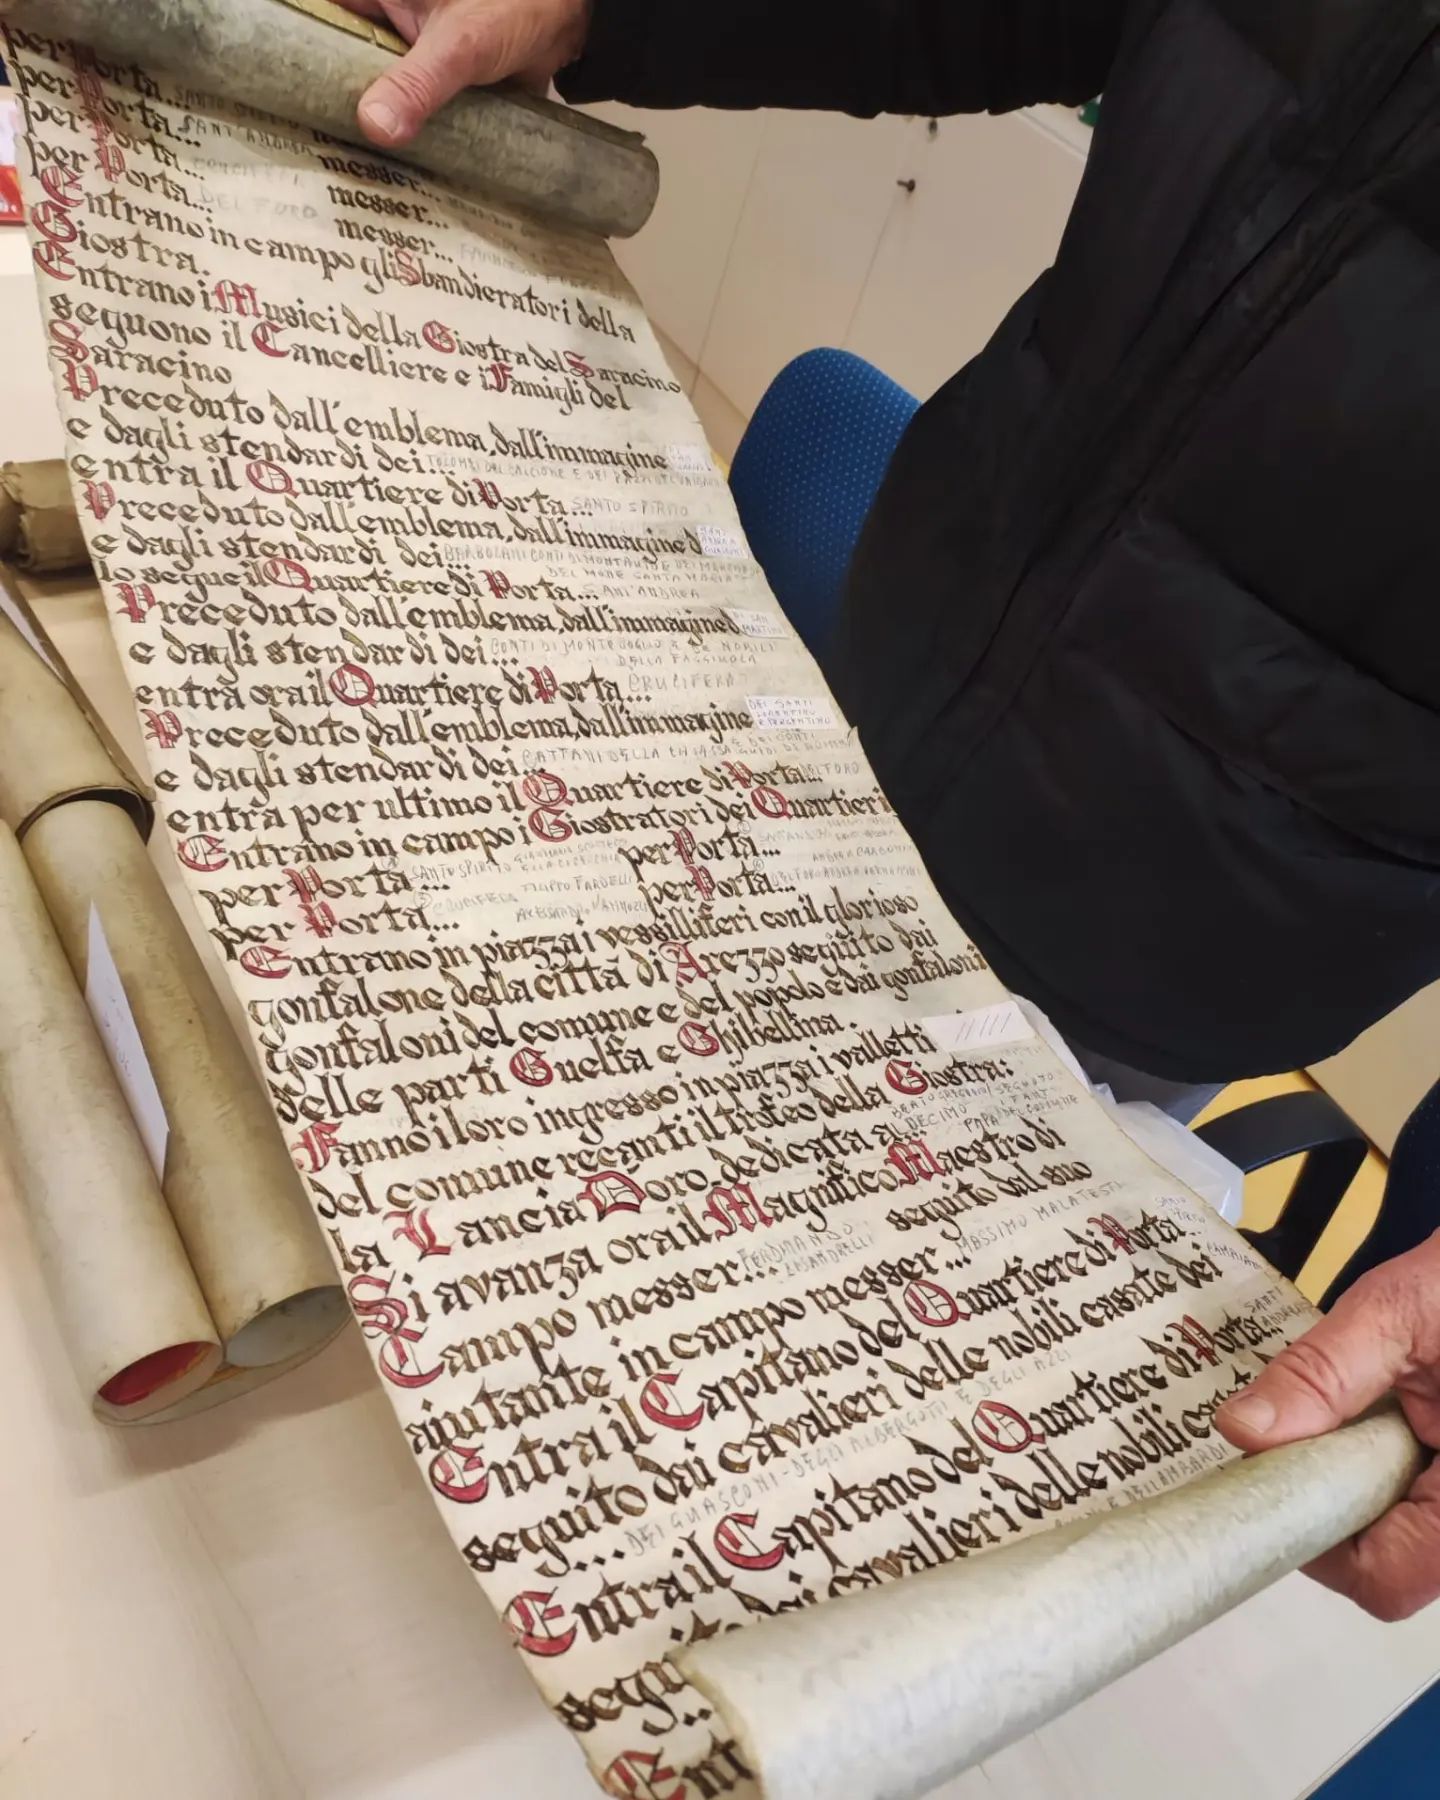 Giostra: le pergamene dell'araldo in mostra a Signa Arretii